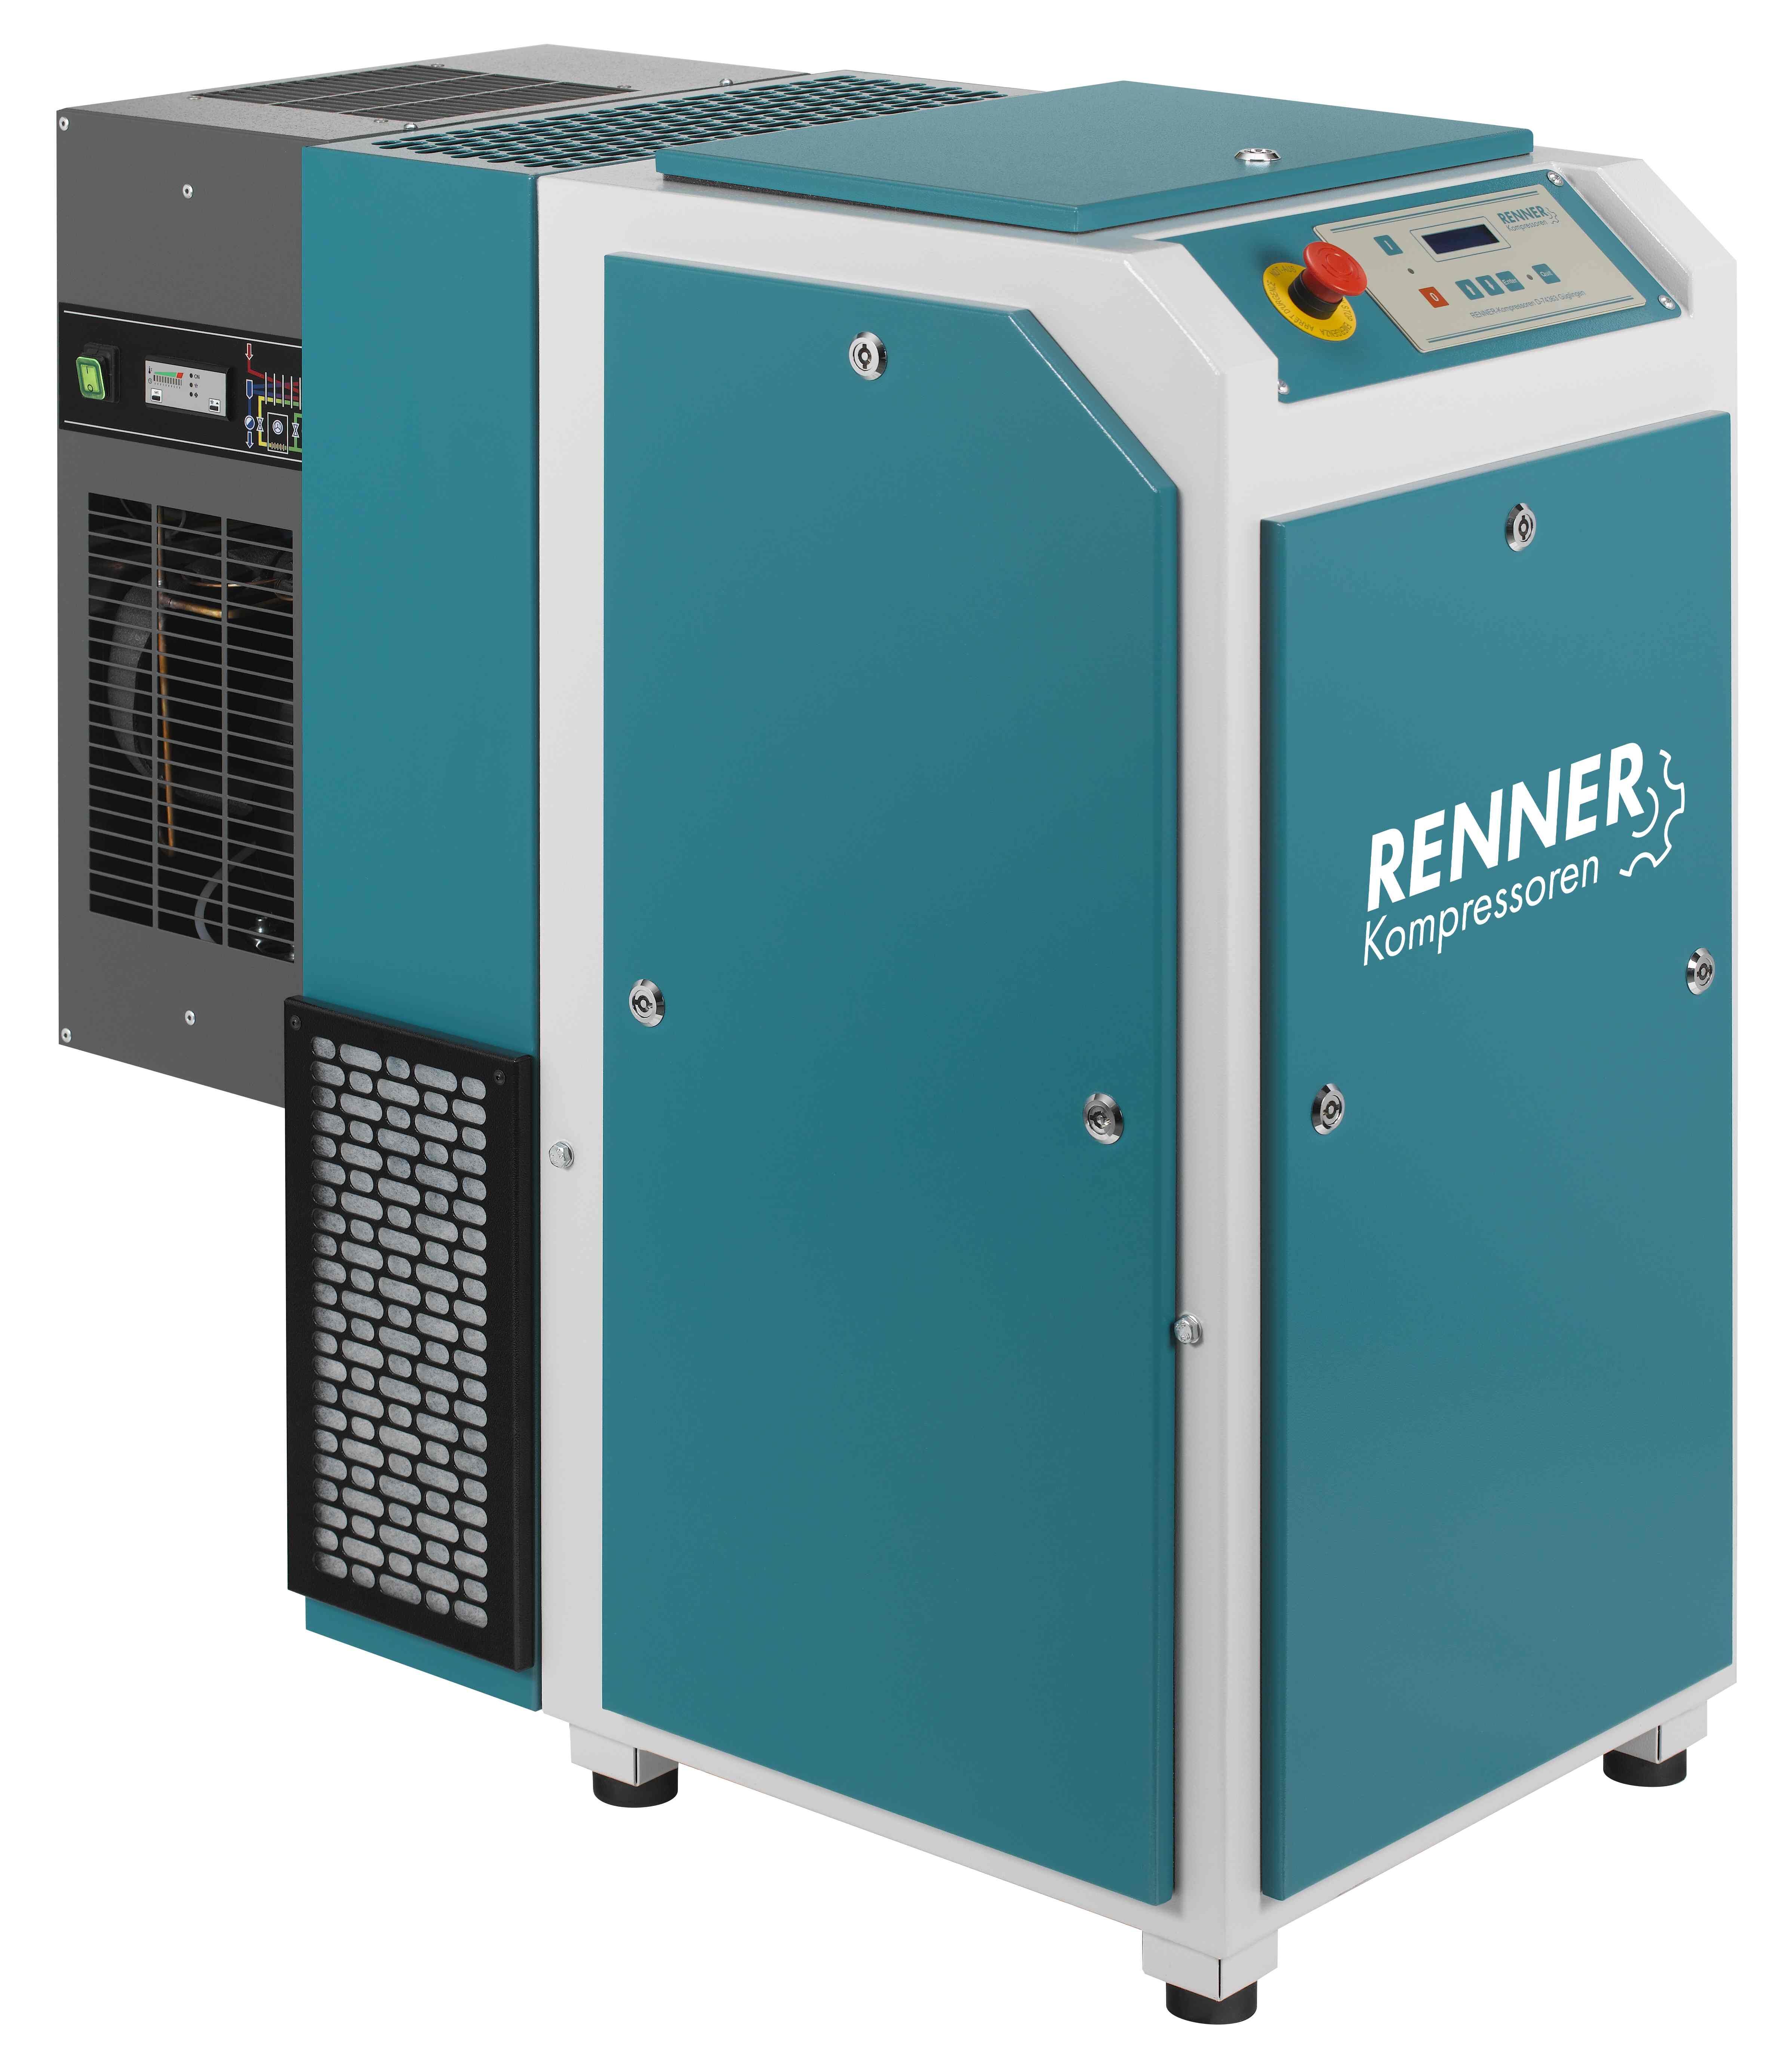 RENNER-Kompressor Modell RSK-PRO 15,0 Schraubenkompressor